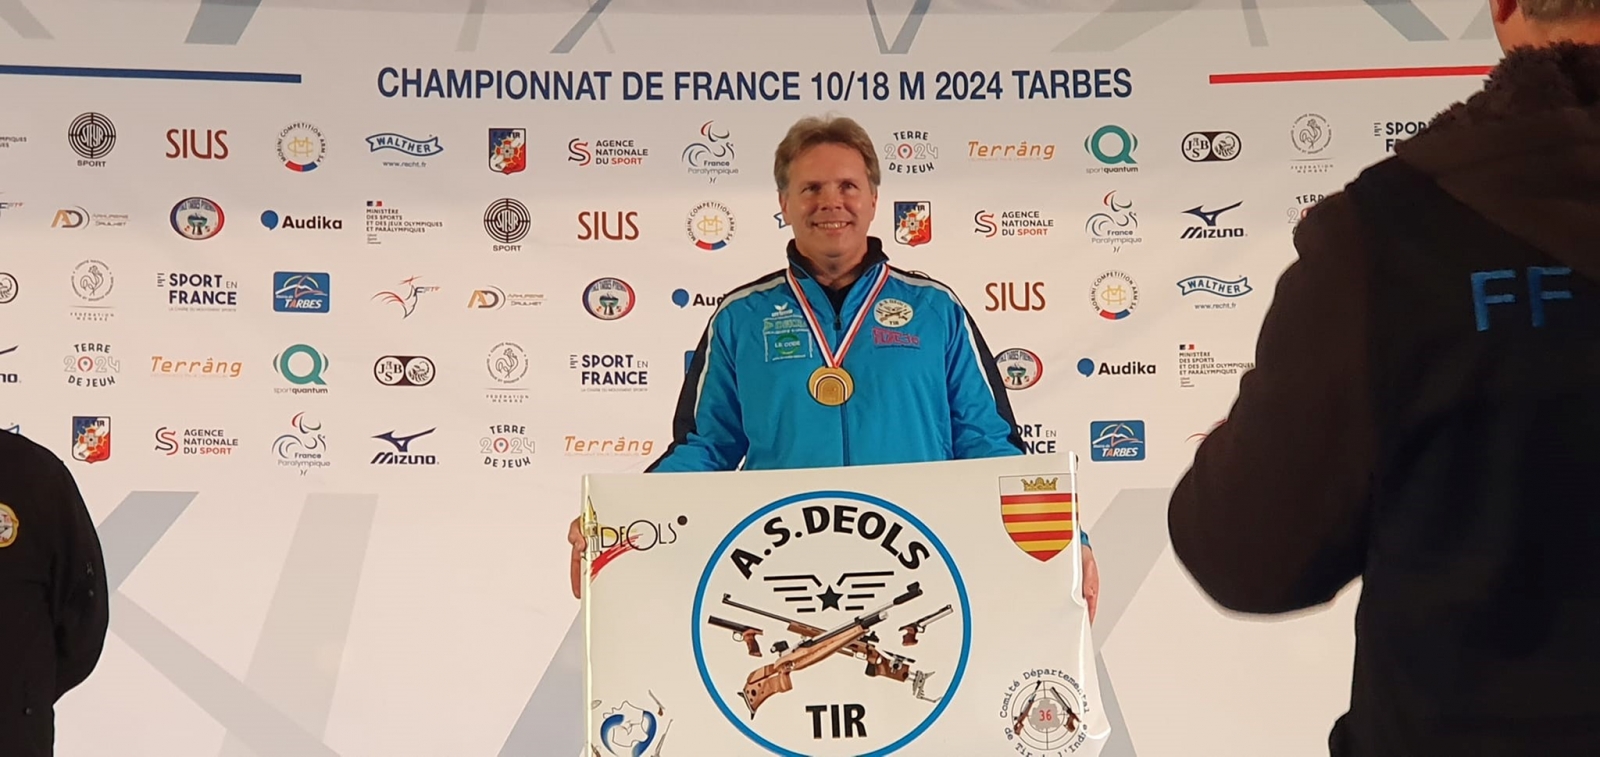 46 ème Championnat de France 10/18 mètres - Tarbe 2024 : Christophe HEMERY, Champion de France au Pistolet - S2